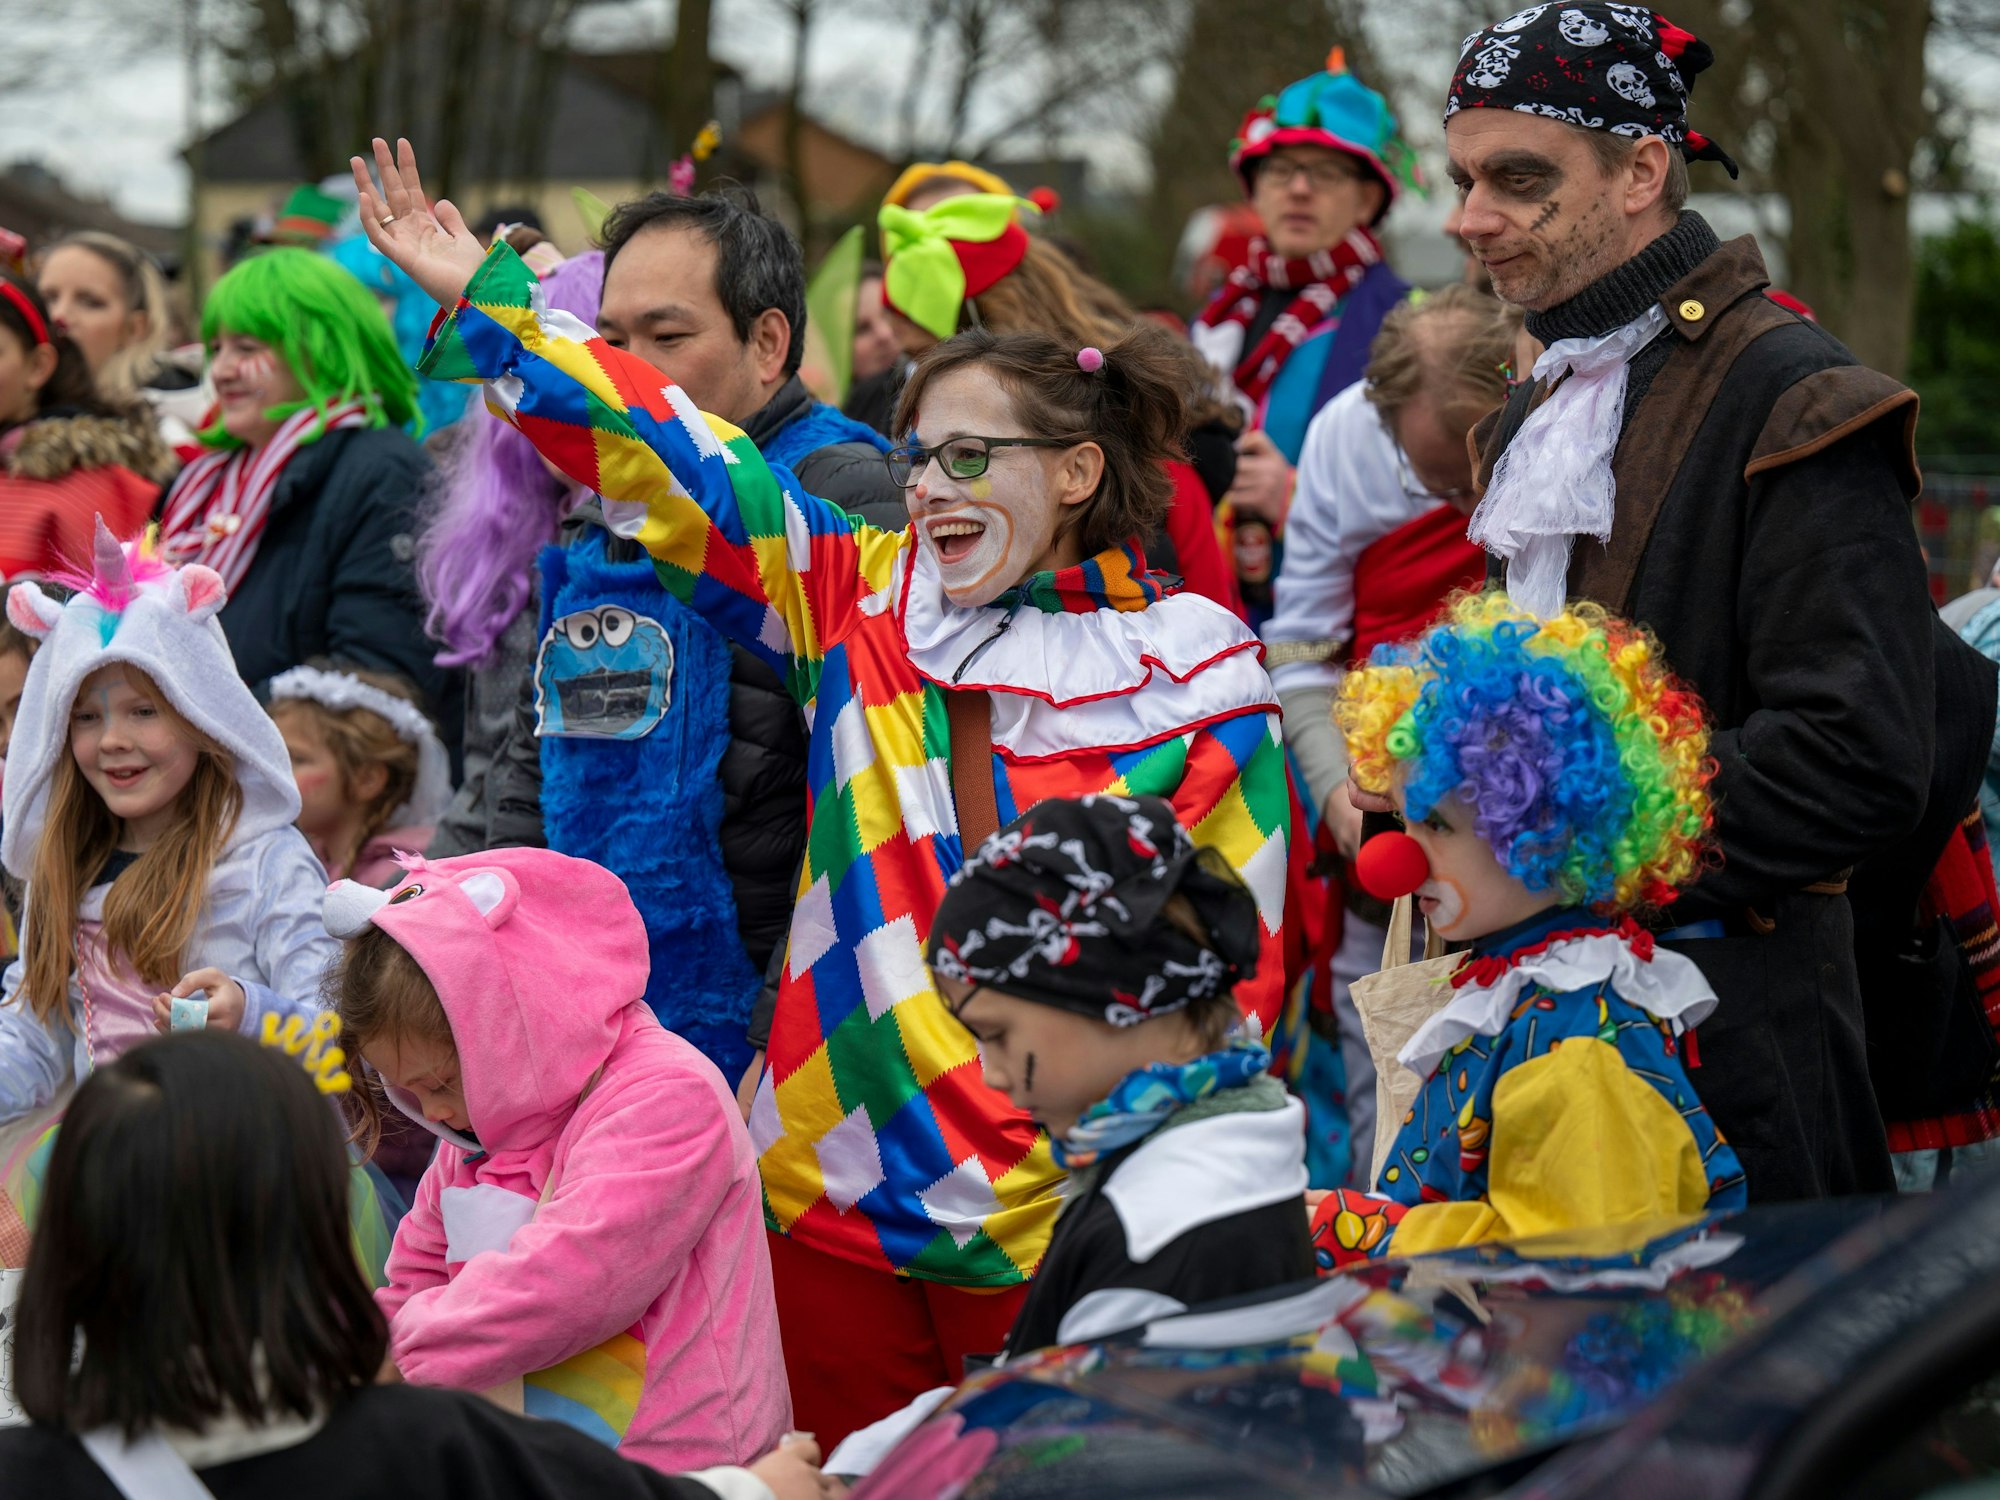 Die gute Laune war den Teilnehmenden beim Karnevalszug im Merheimer Veedel am 10. Februar anzusehen. Eine als Clown verkleidete Frau ruft etwas in die Menge.